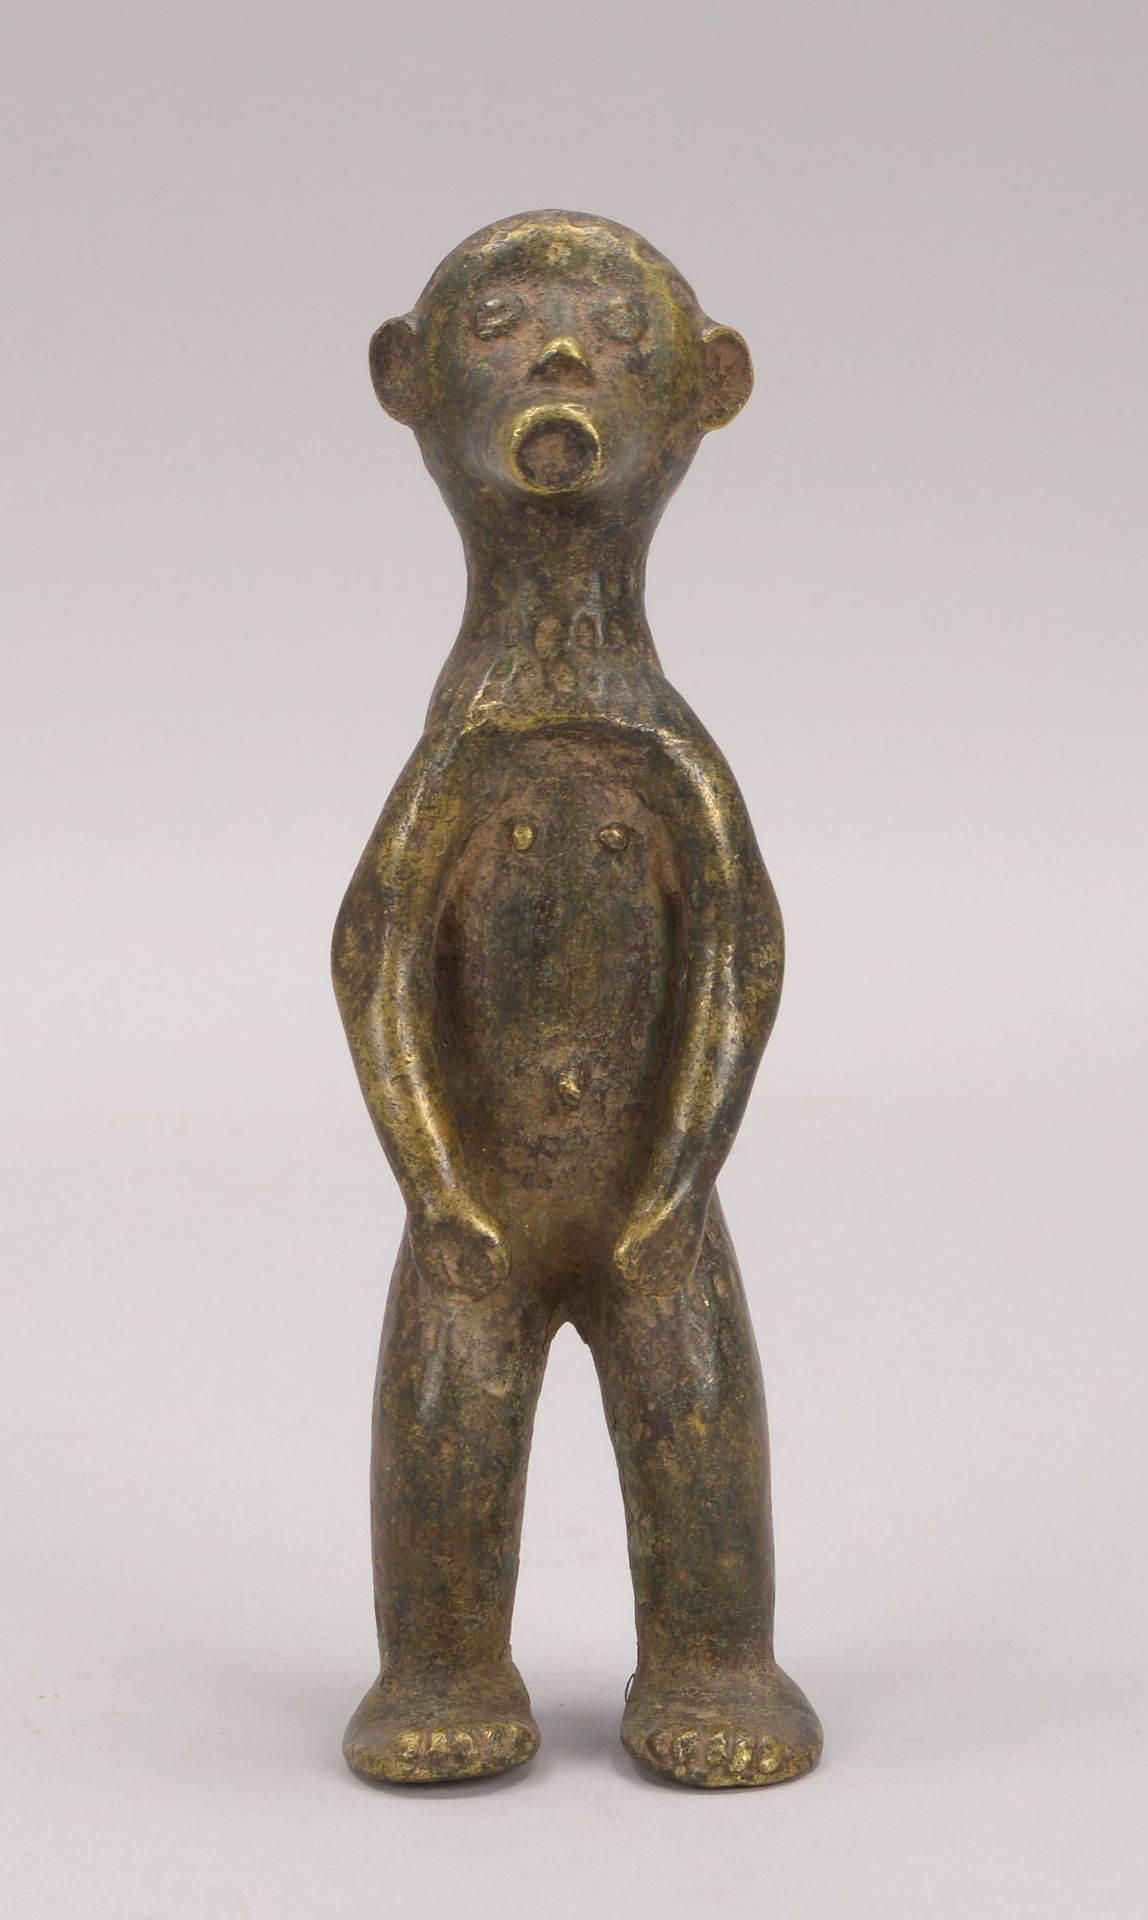 Bronzeskulptur (Afrika), -Stehender Mann-, Figur in leicht abstrahierter Gestaltung, Hoehe 21 cm